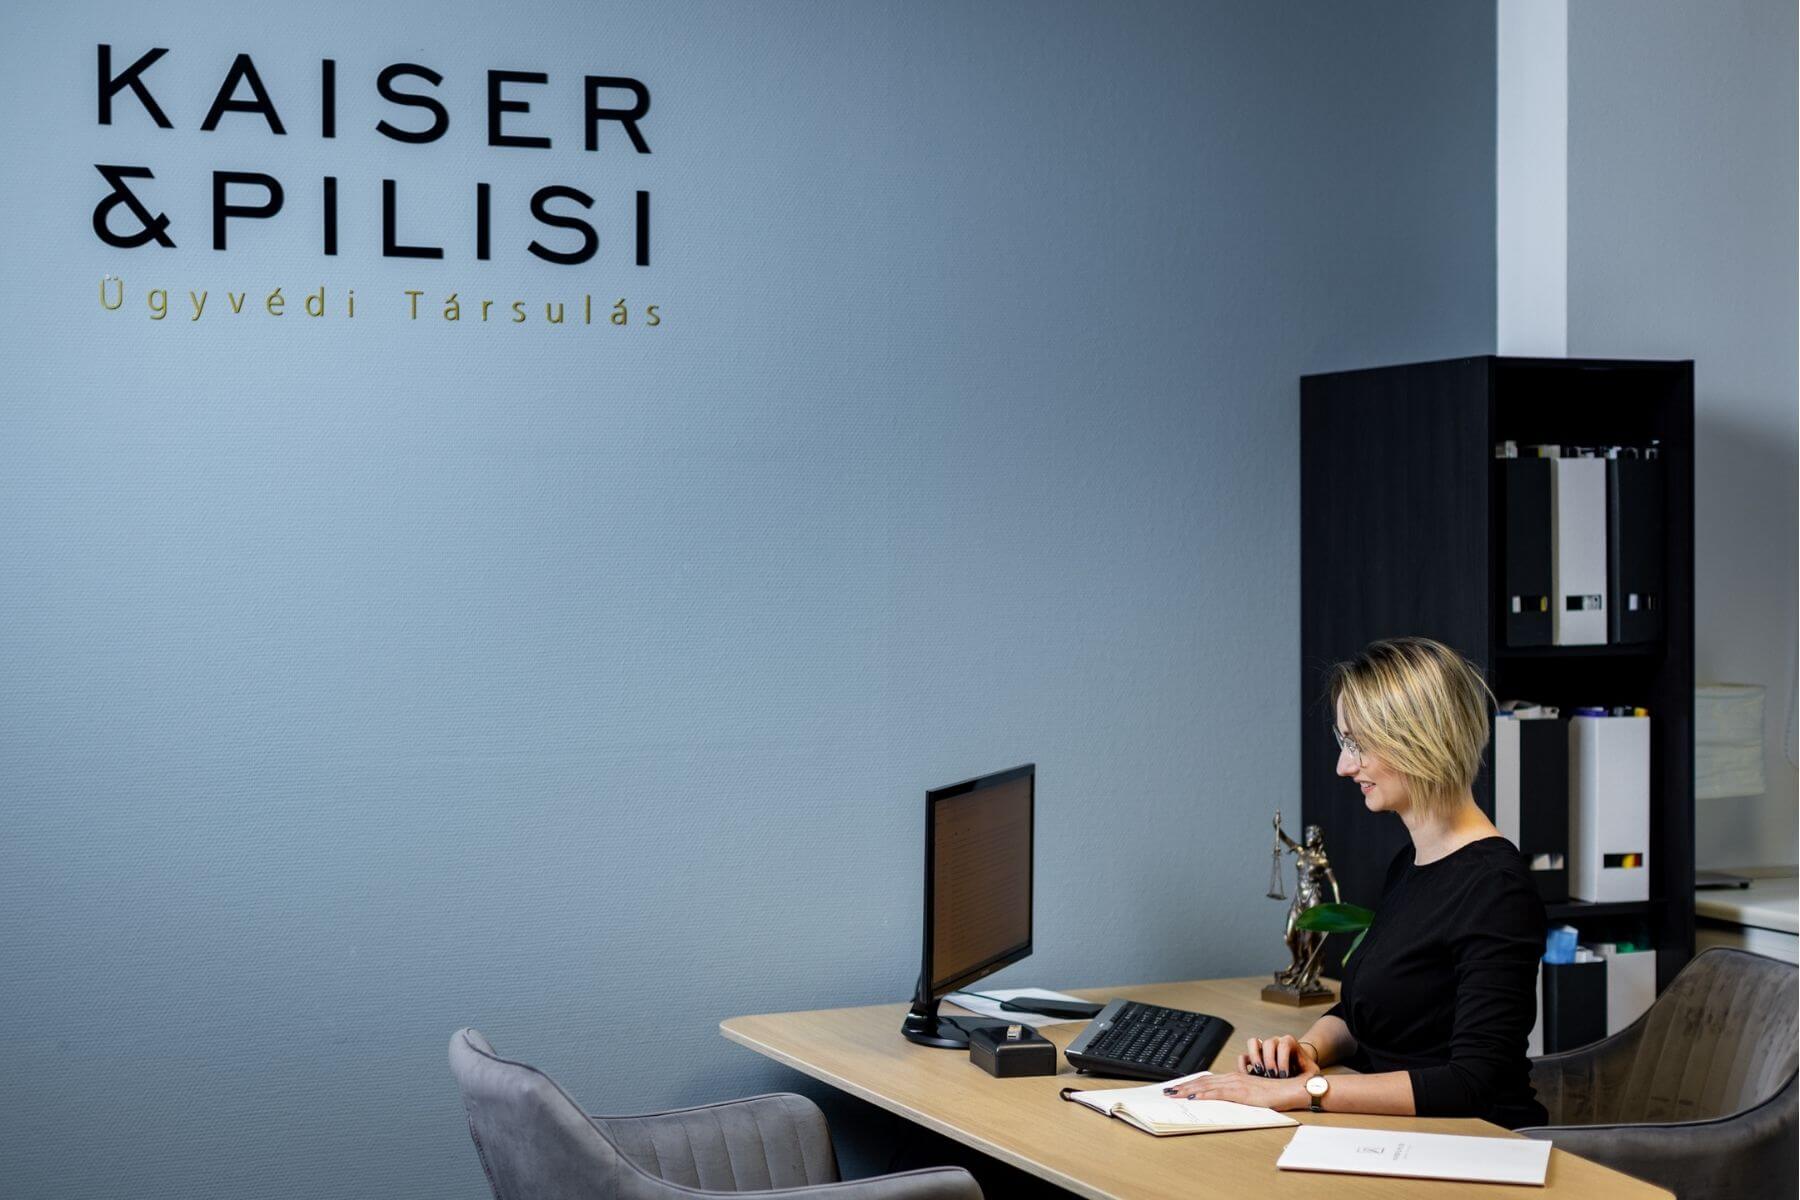 A Kaiser & Pilisi Ügyvéd Társulás image fotózása az irodában.